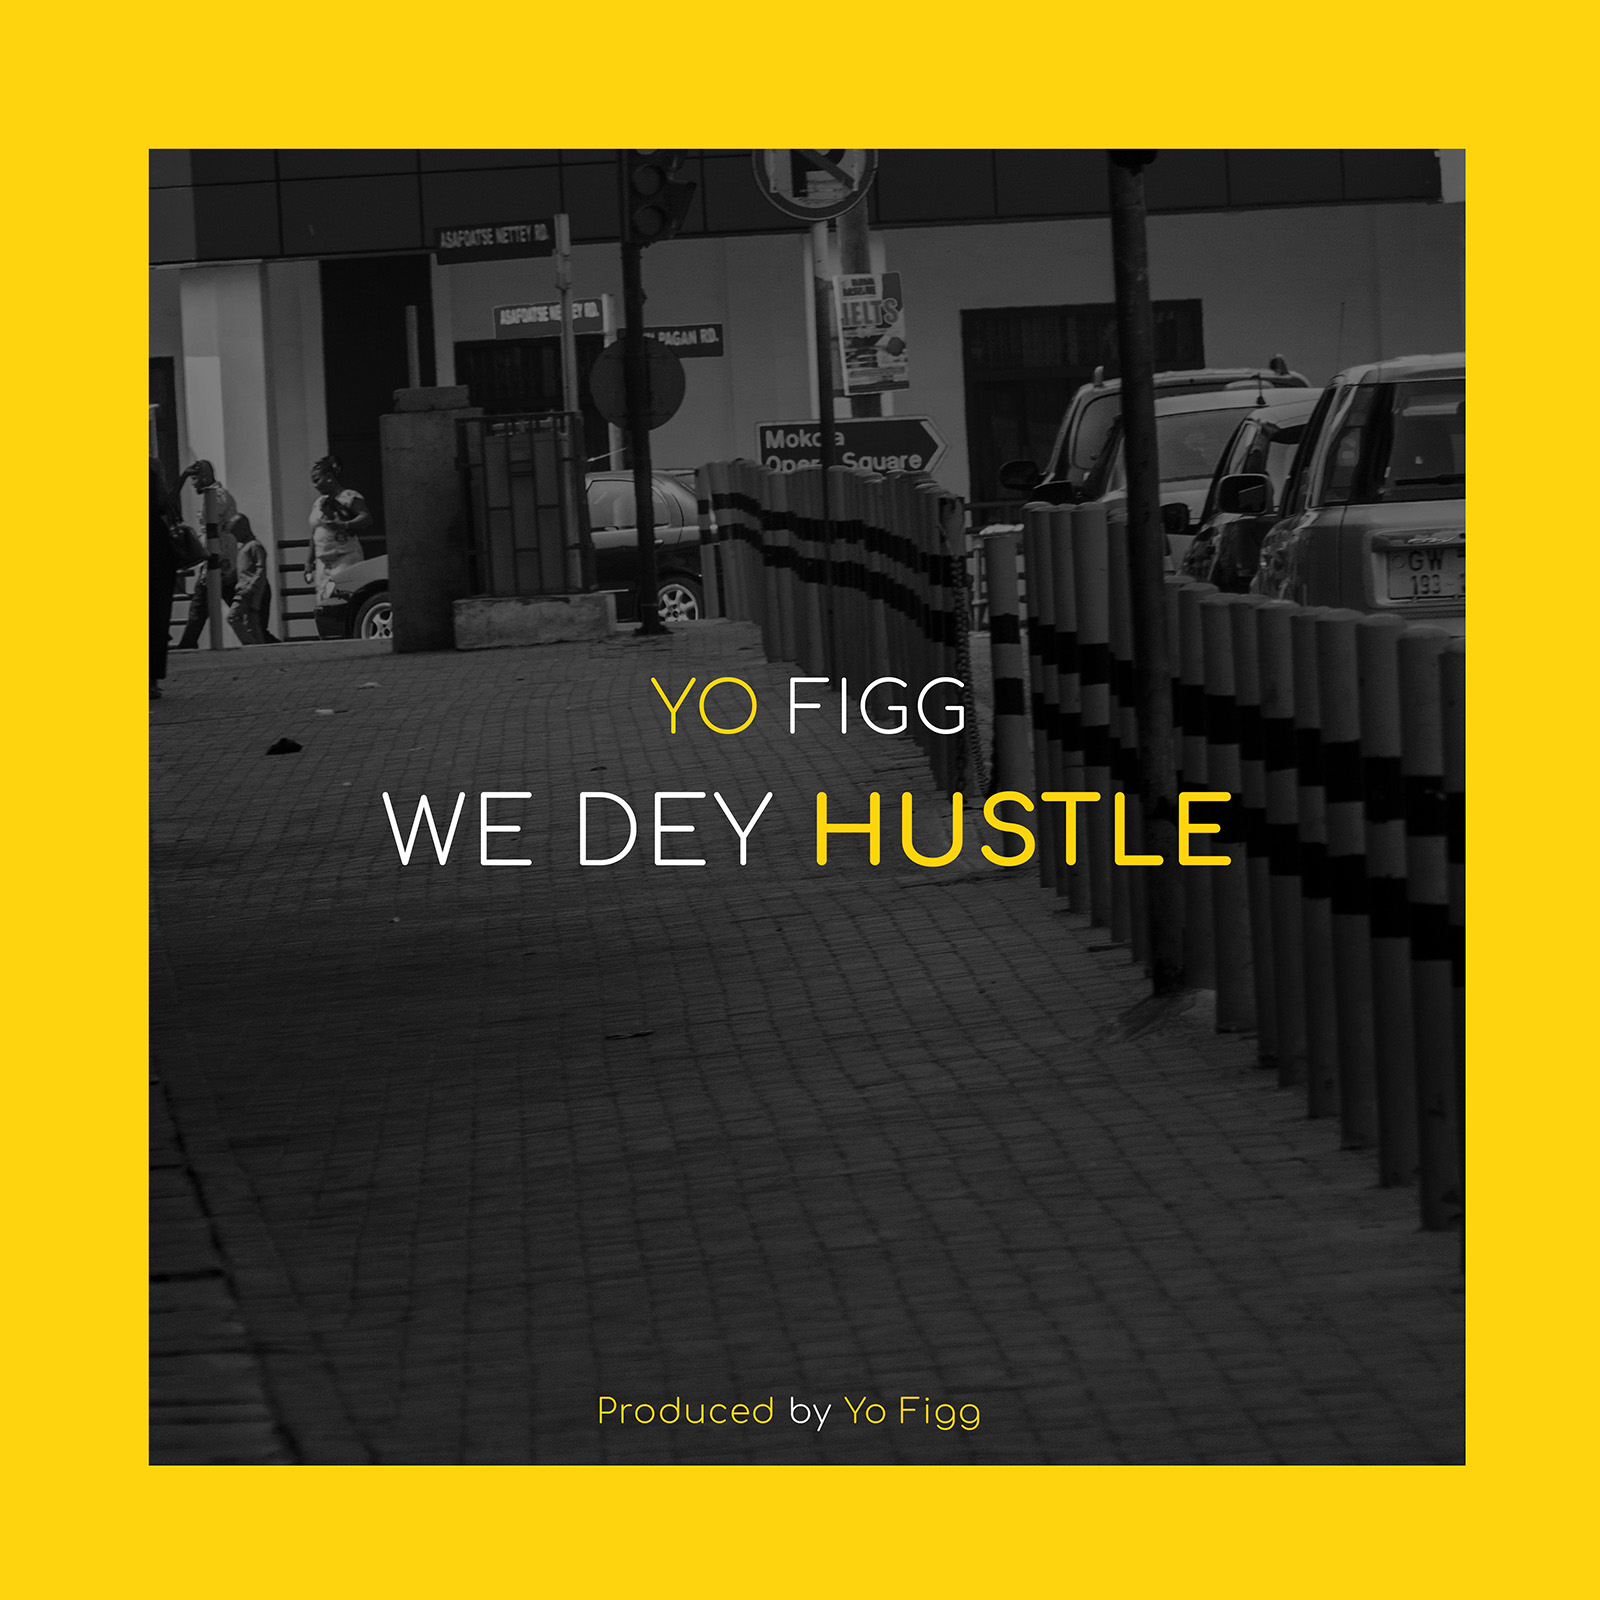 We Dey Hustle by YoFigg